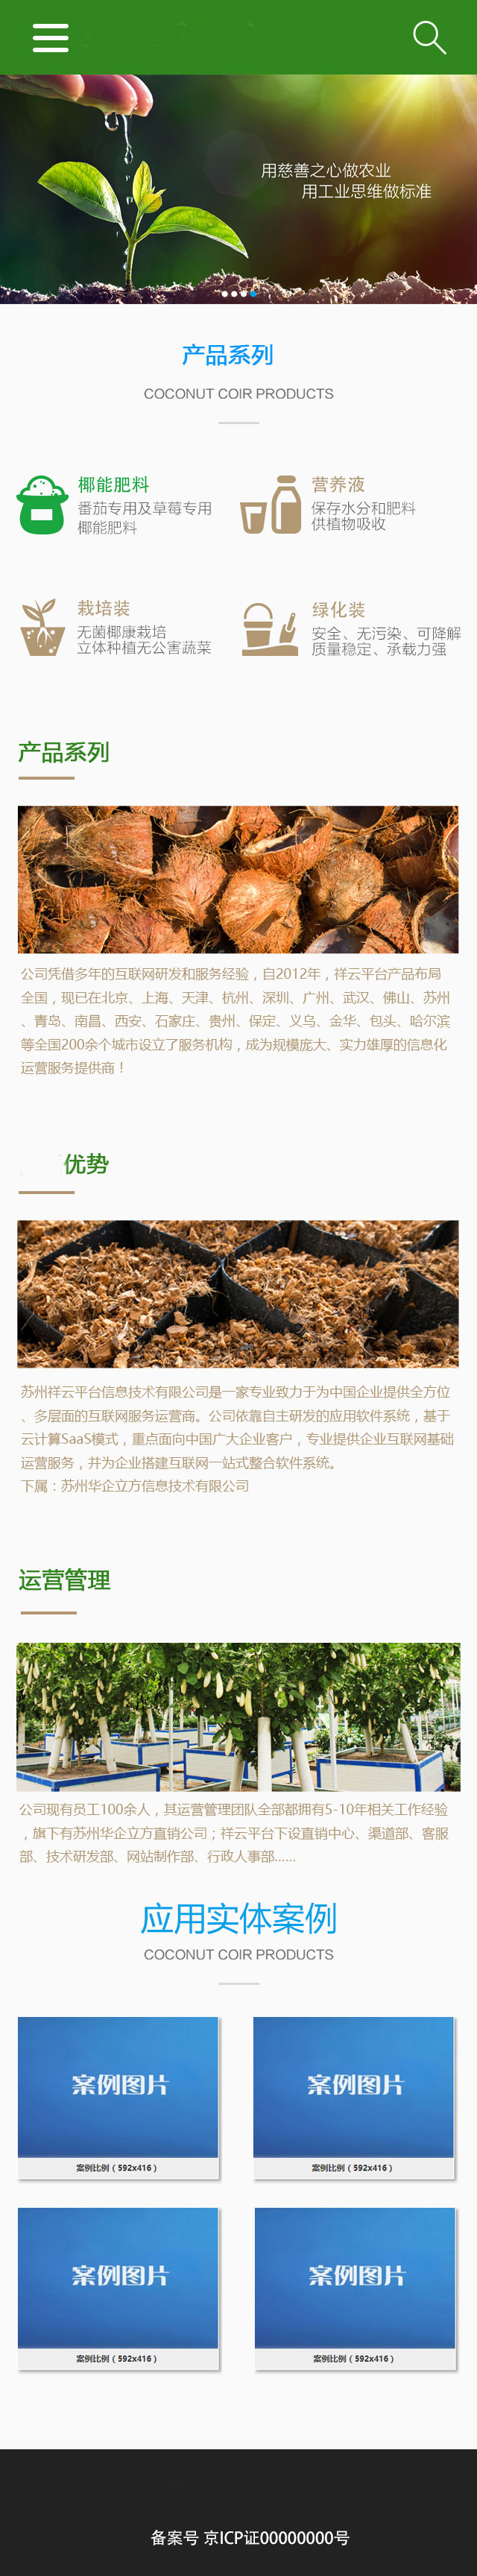 西安农业类手机网站建设案例